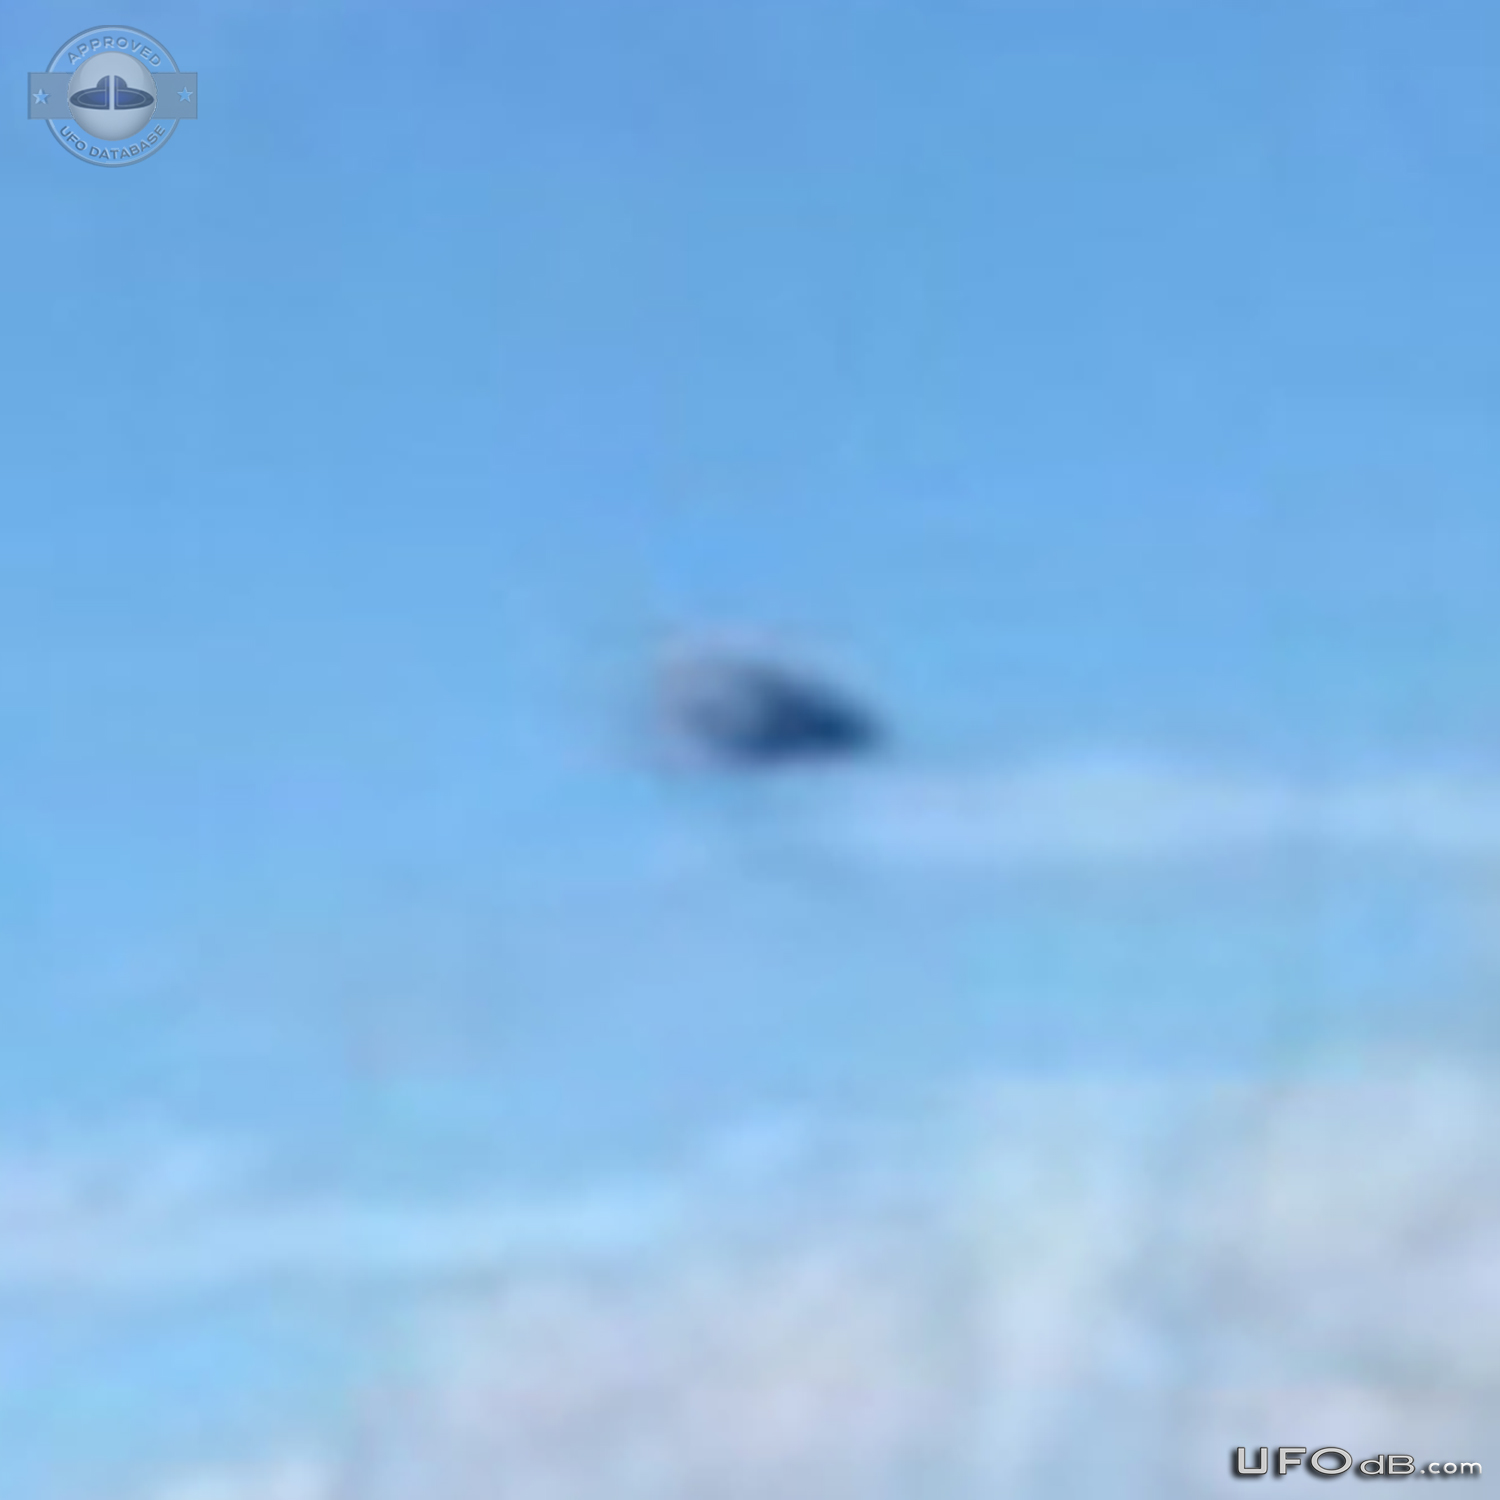 UFO in Raposa Serra do Sol, Roraima in Brazil - July 12 2014 UFO Picture #591-4